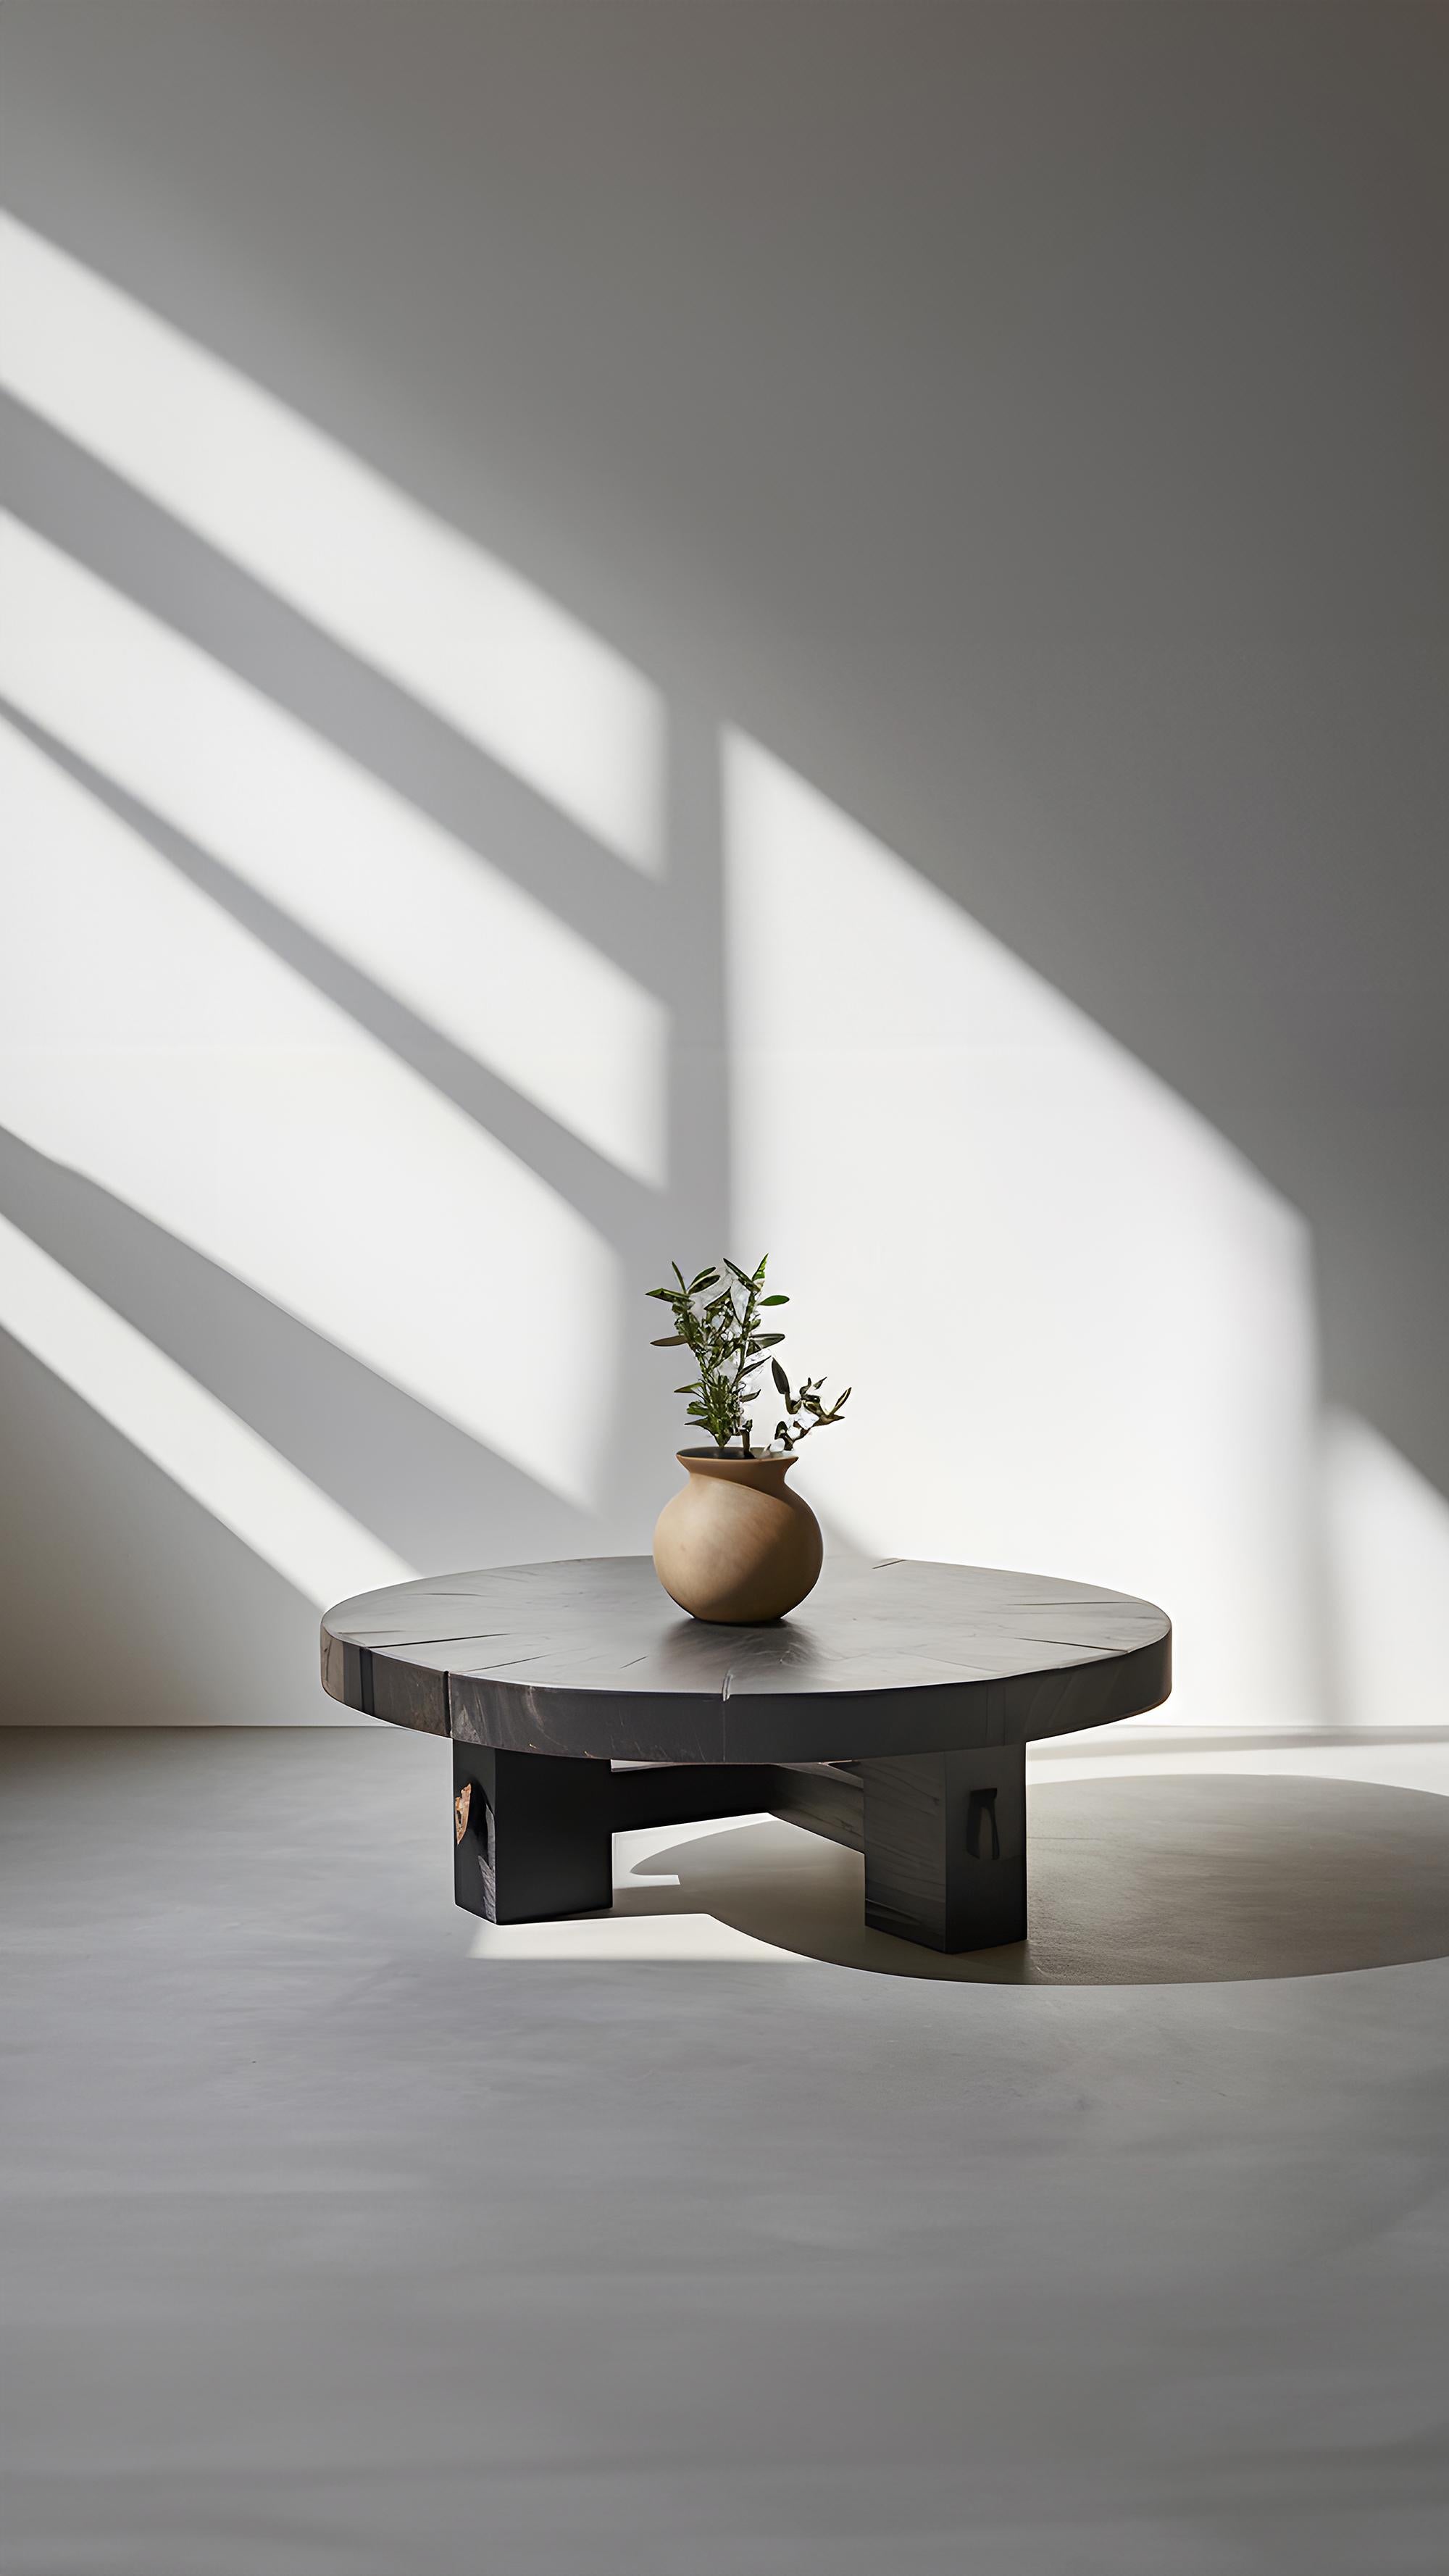 Mexican Low-profile Round Oak Table - Serene Fundamenta 36 by NONO For Sale